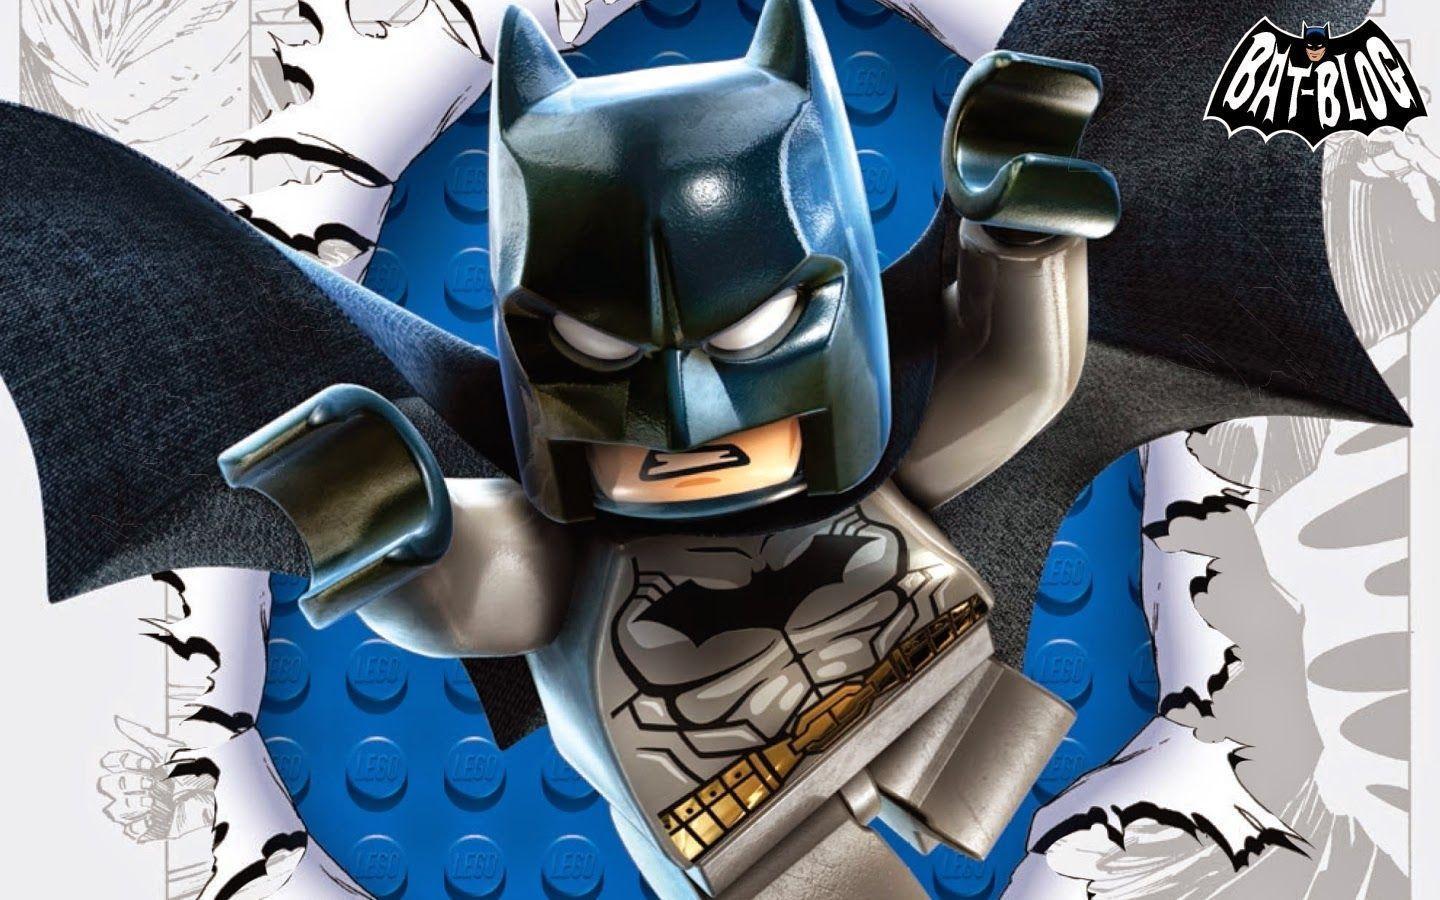 BAT, BATMAN TOYS and COLLECTIBLES: LEGO BATMAN 3 BEYOND